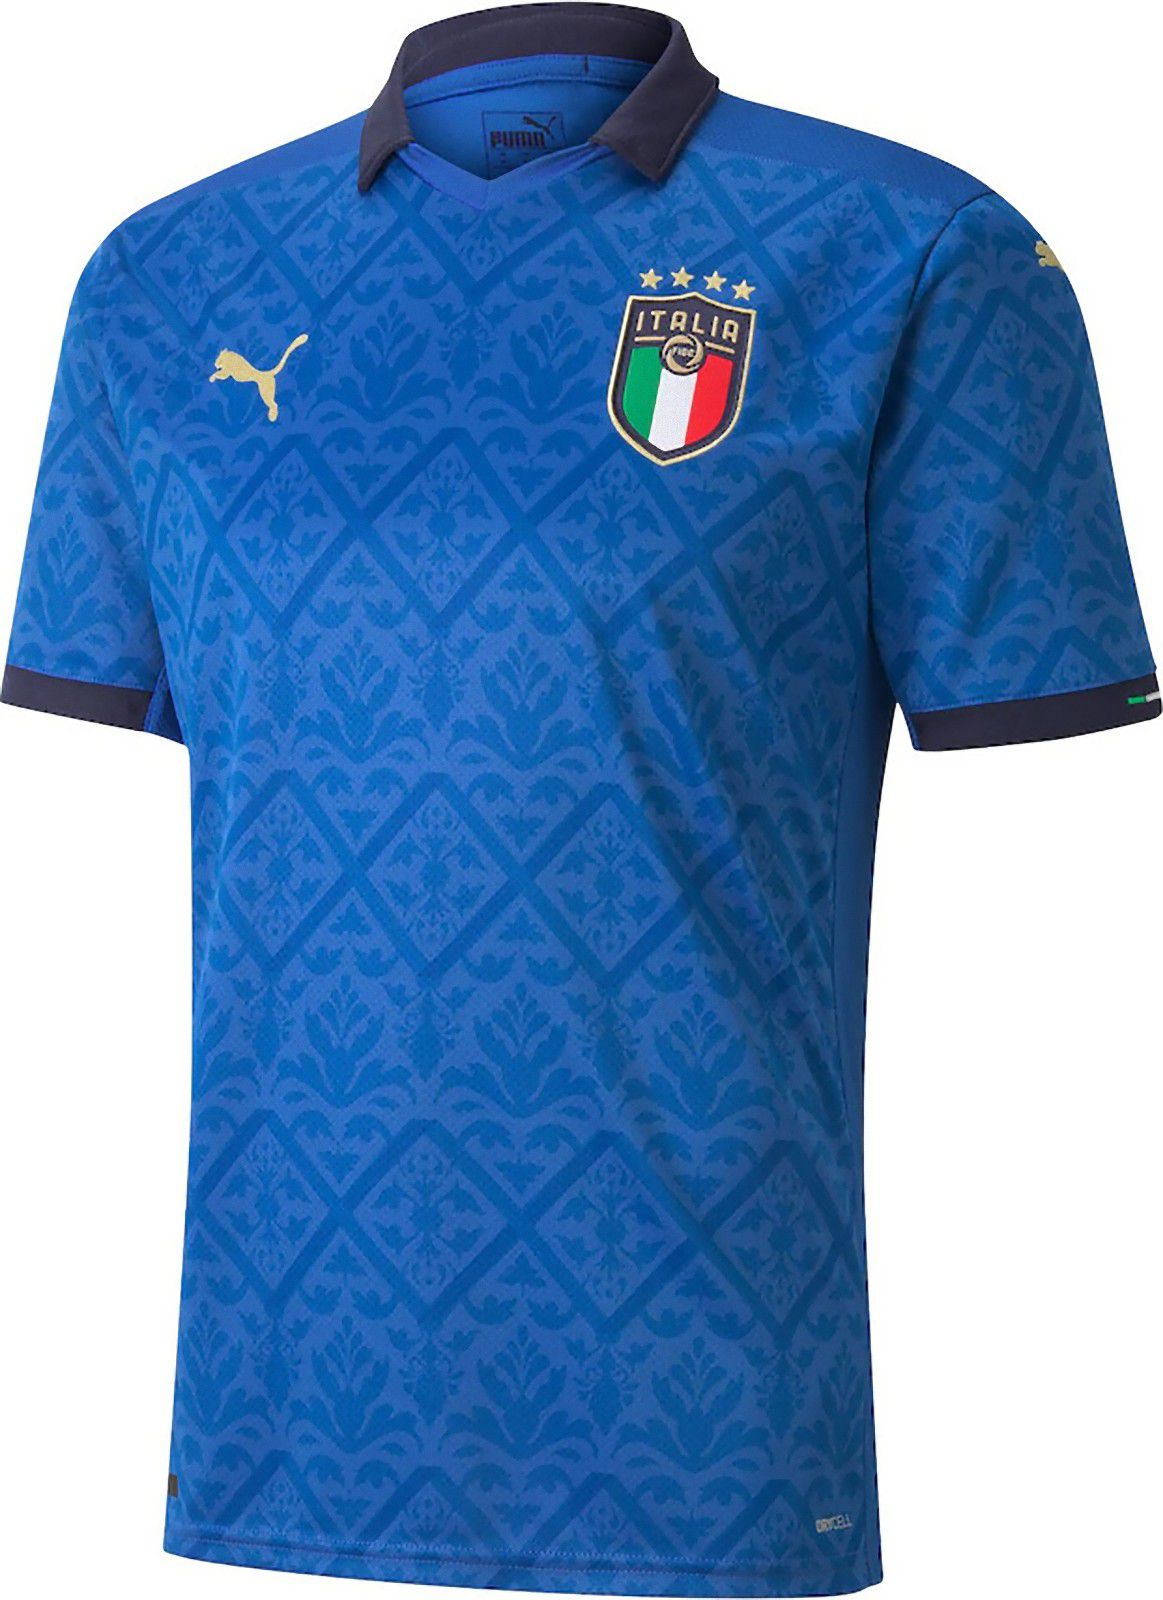 イタリア代表 EURO2020 ユニフォーム - ユニ11